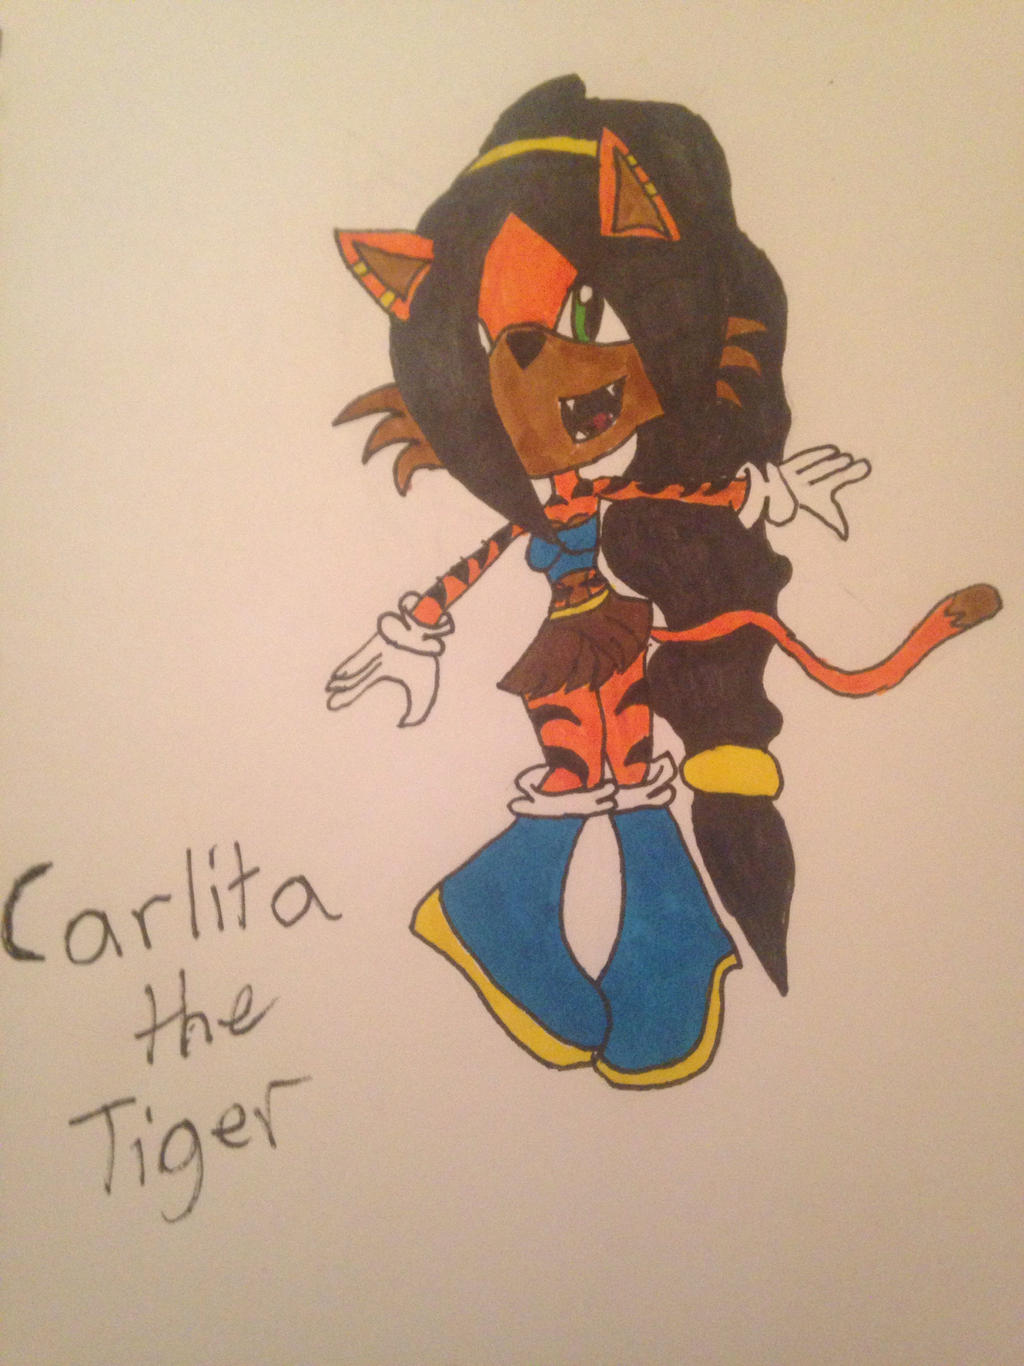 Carlite the tiger